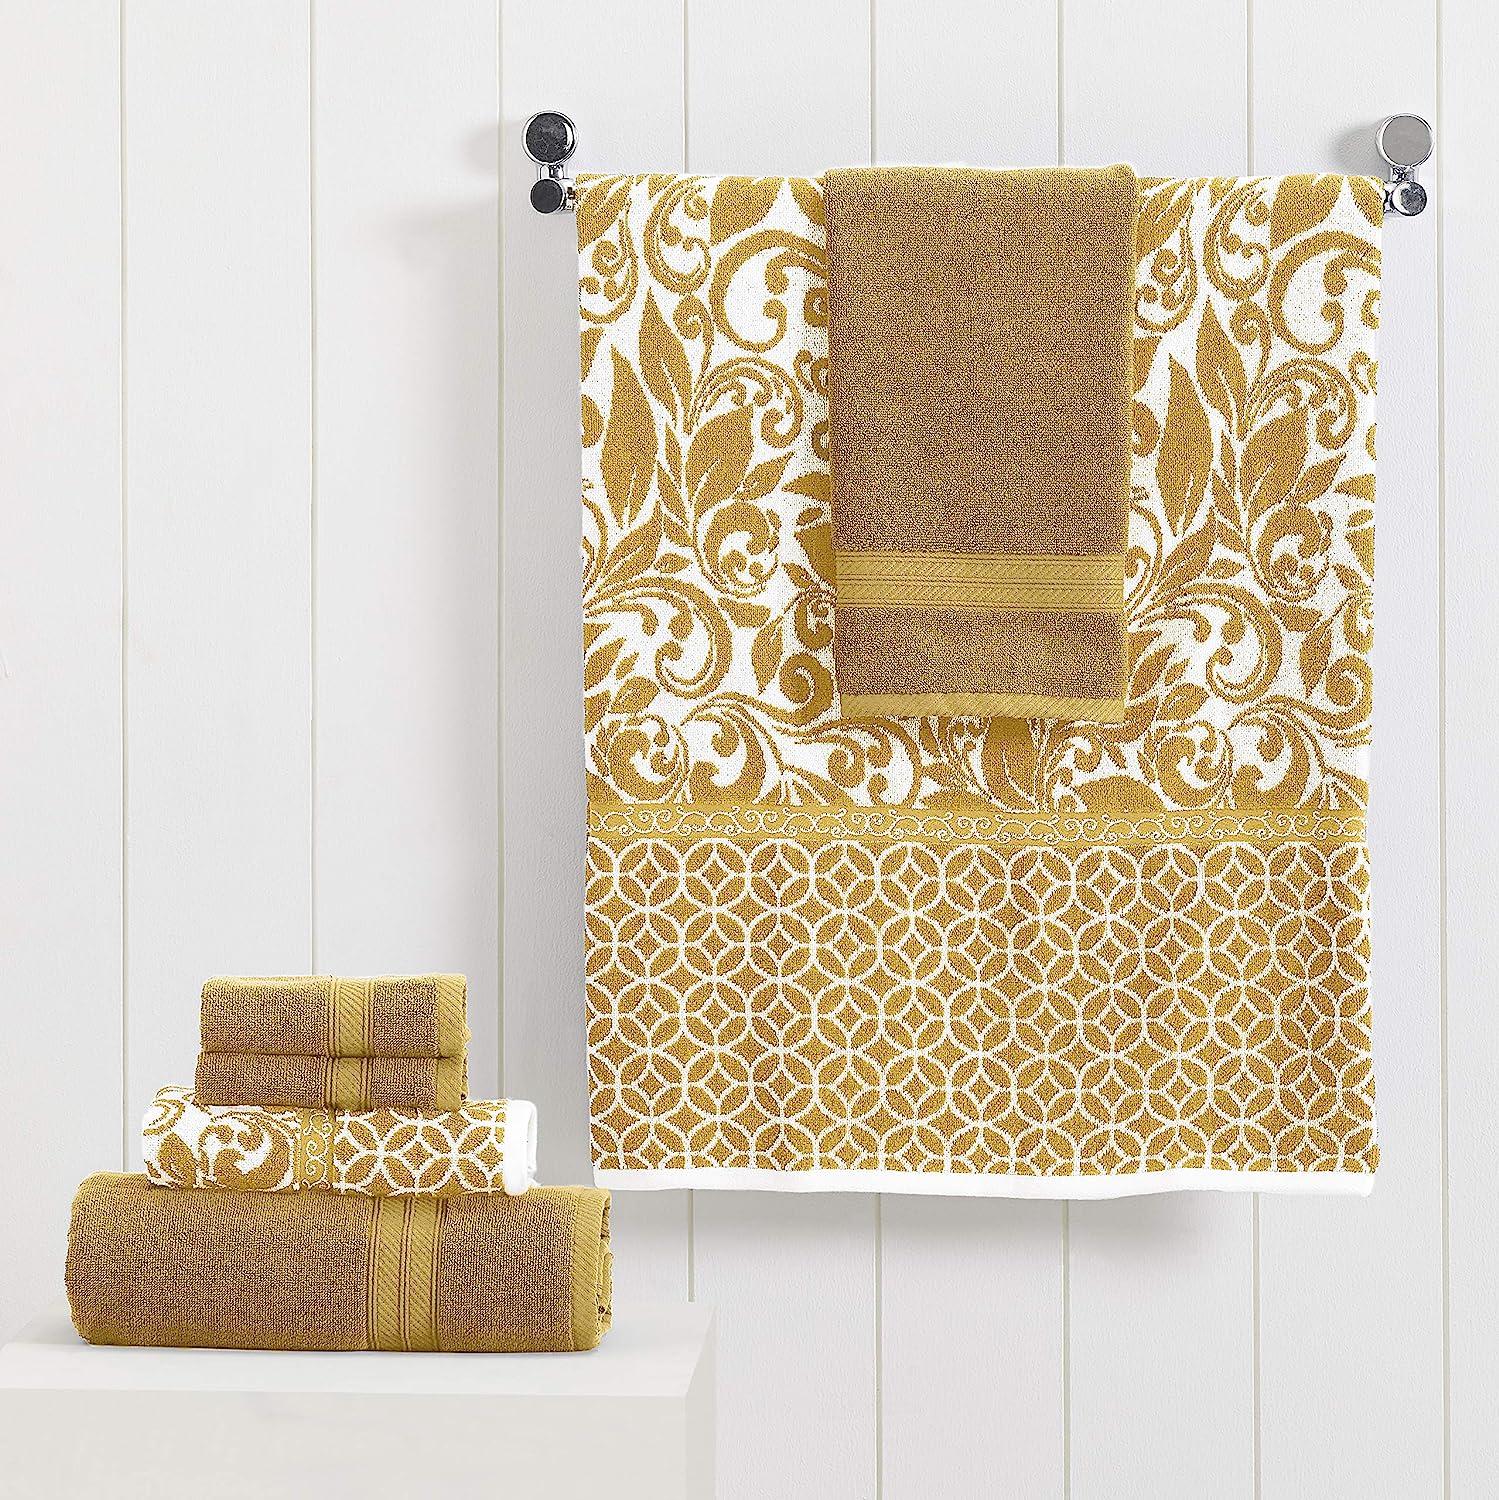 Gold Luxury Bath Towels Decorative Bath Towel for Gold Bathroom